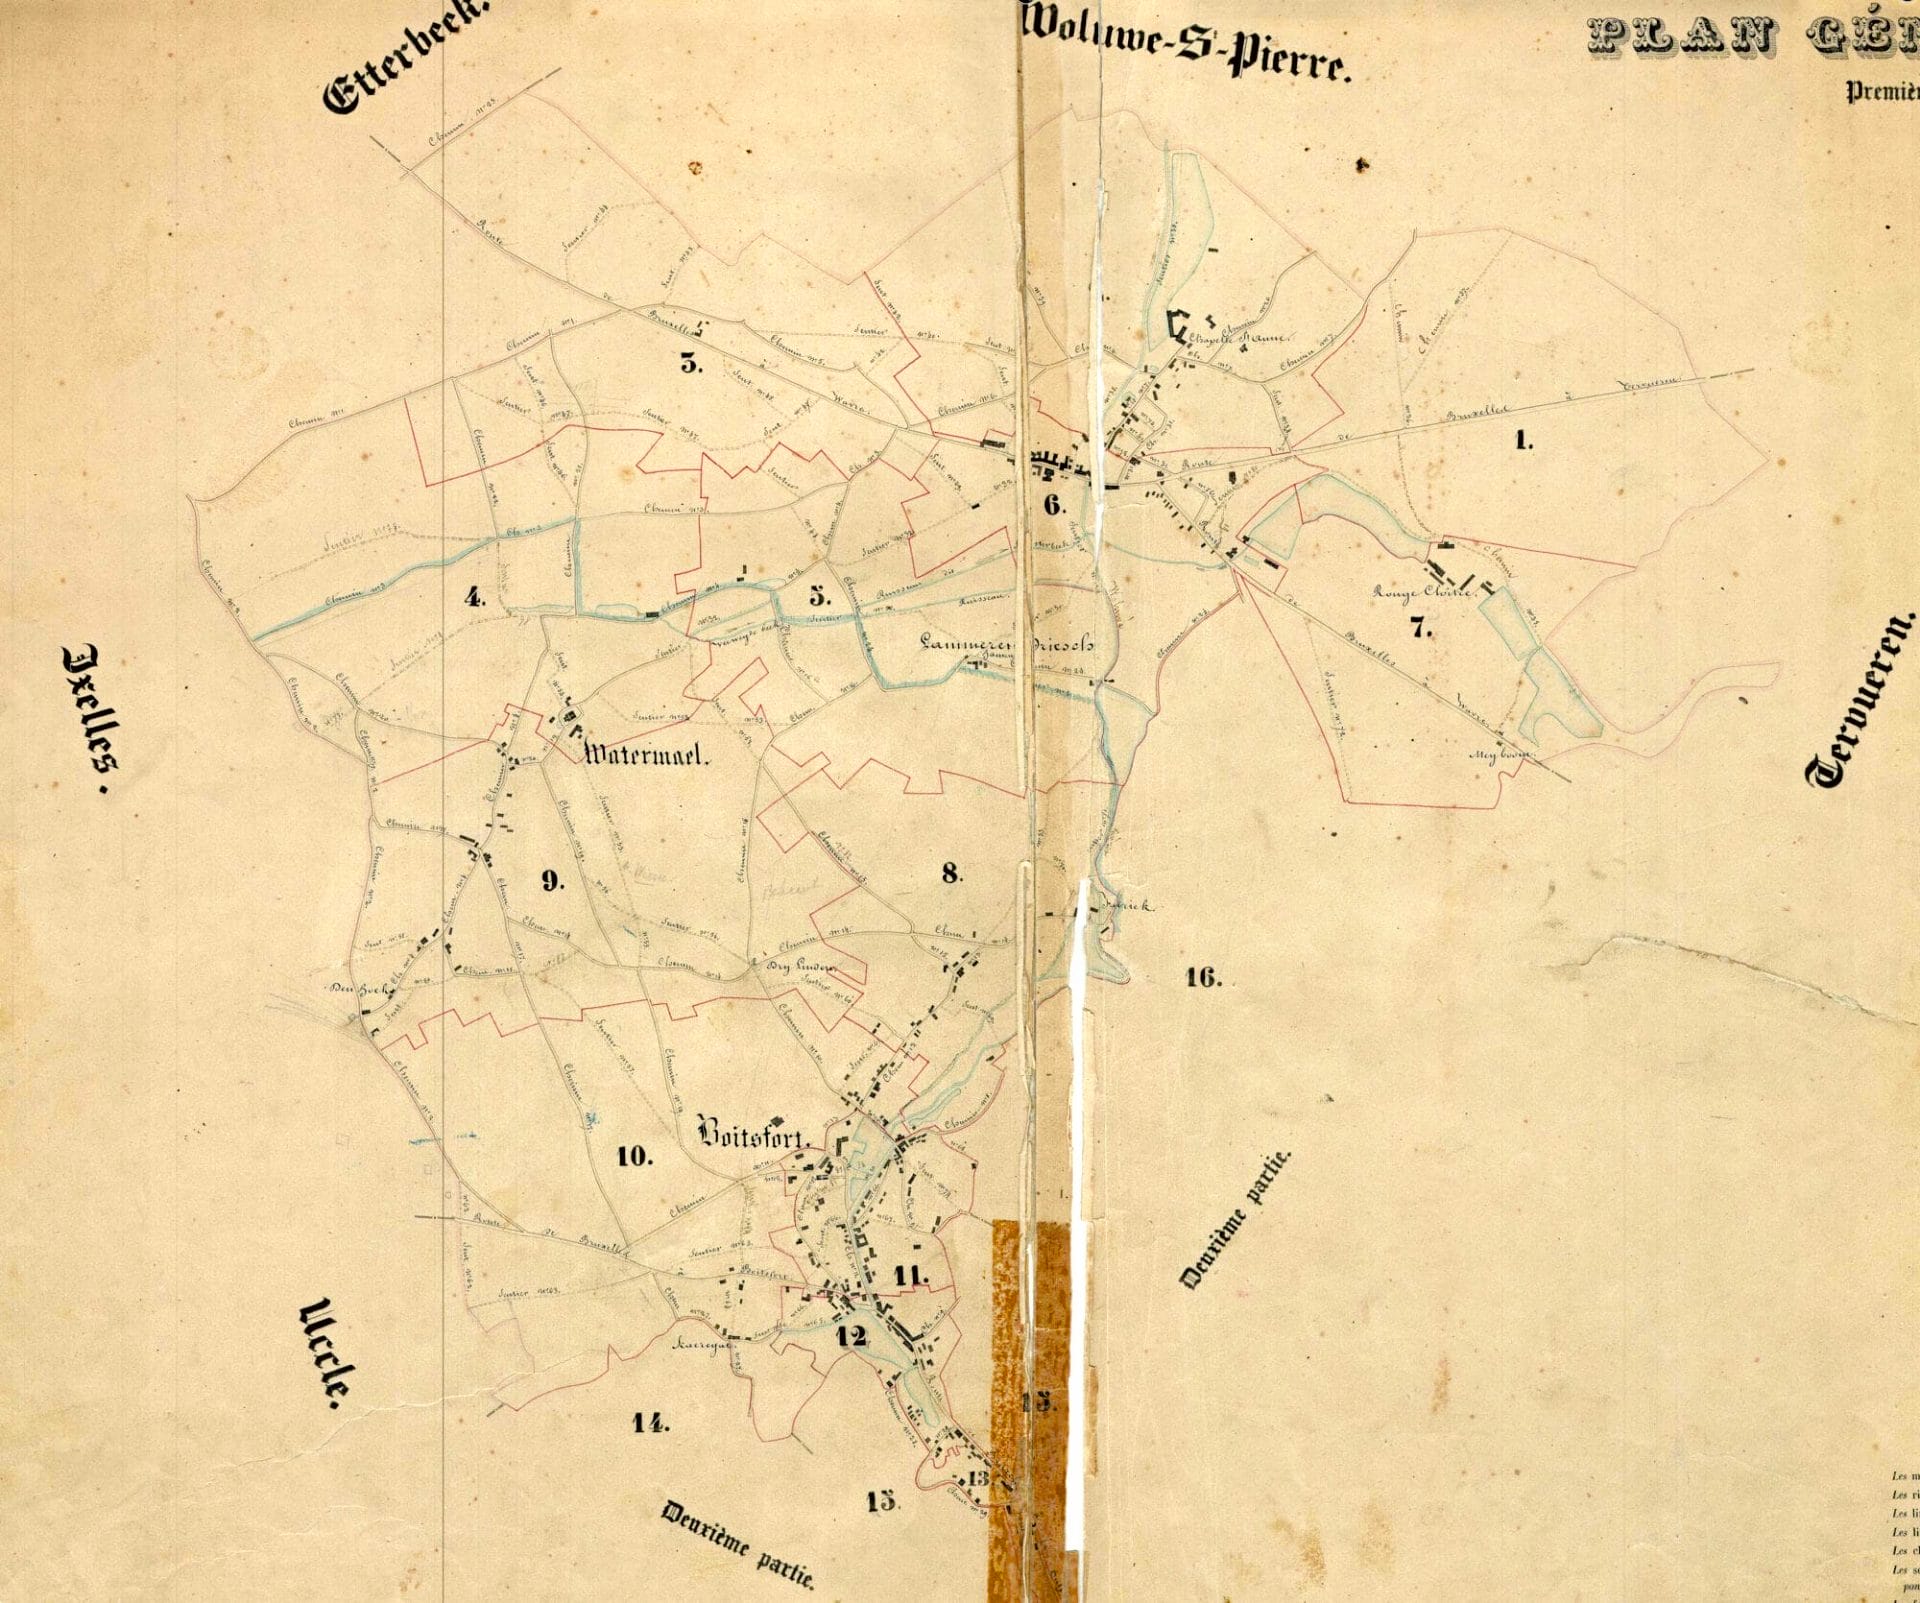 Atlas des chemins vicinaux. Plan général de W-B-A (partie 1) dressé par le géomètre expert Meyers en 1843.